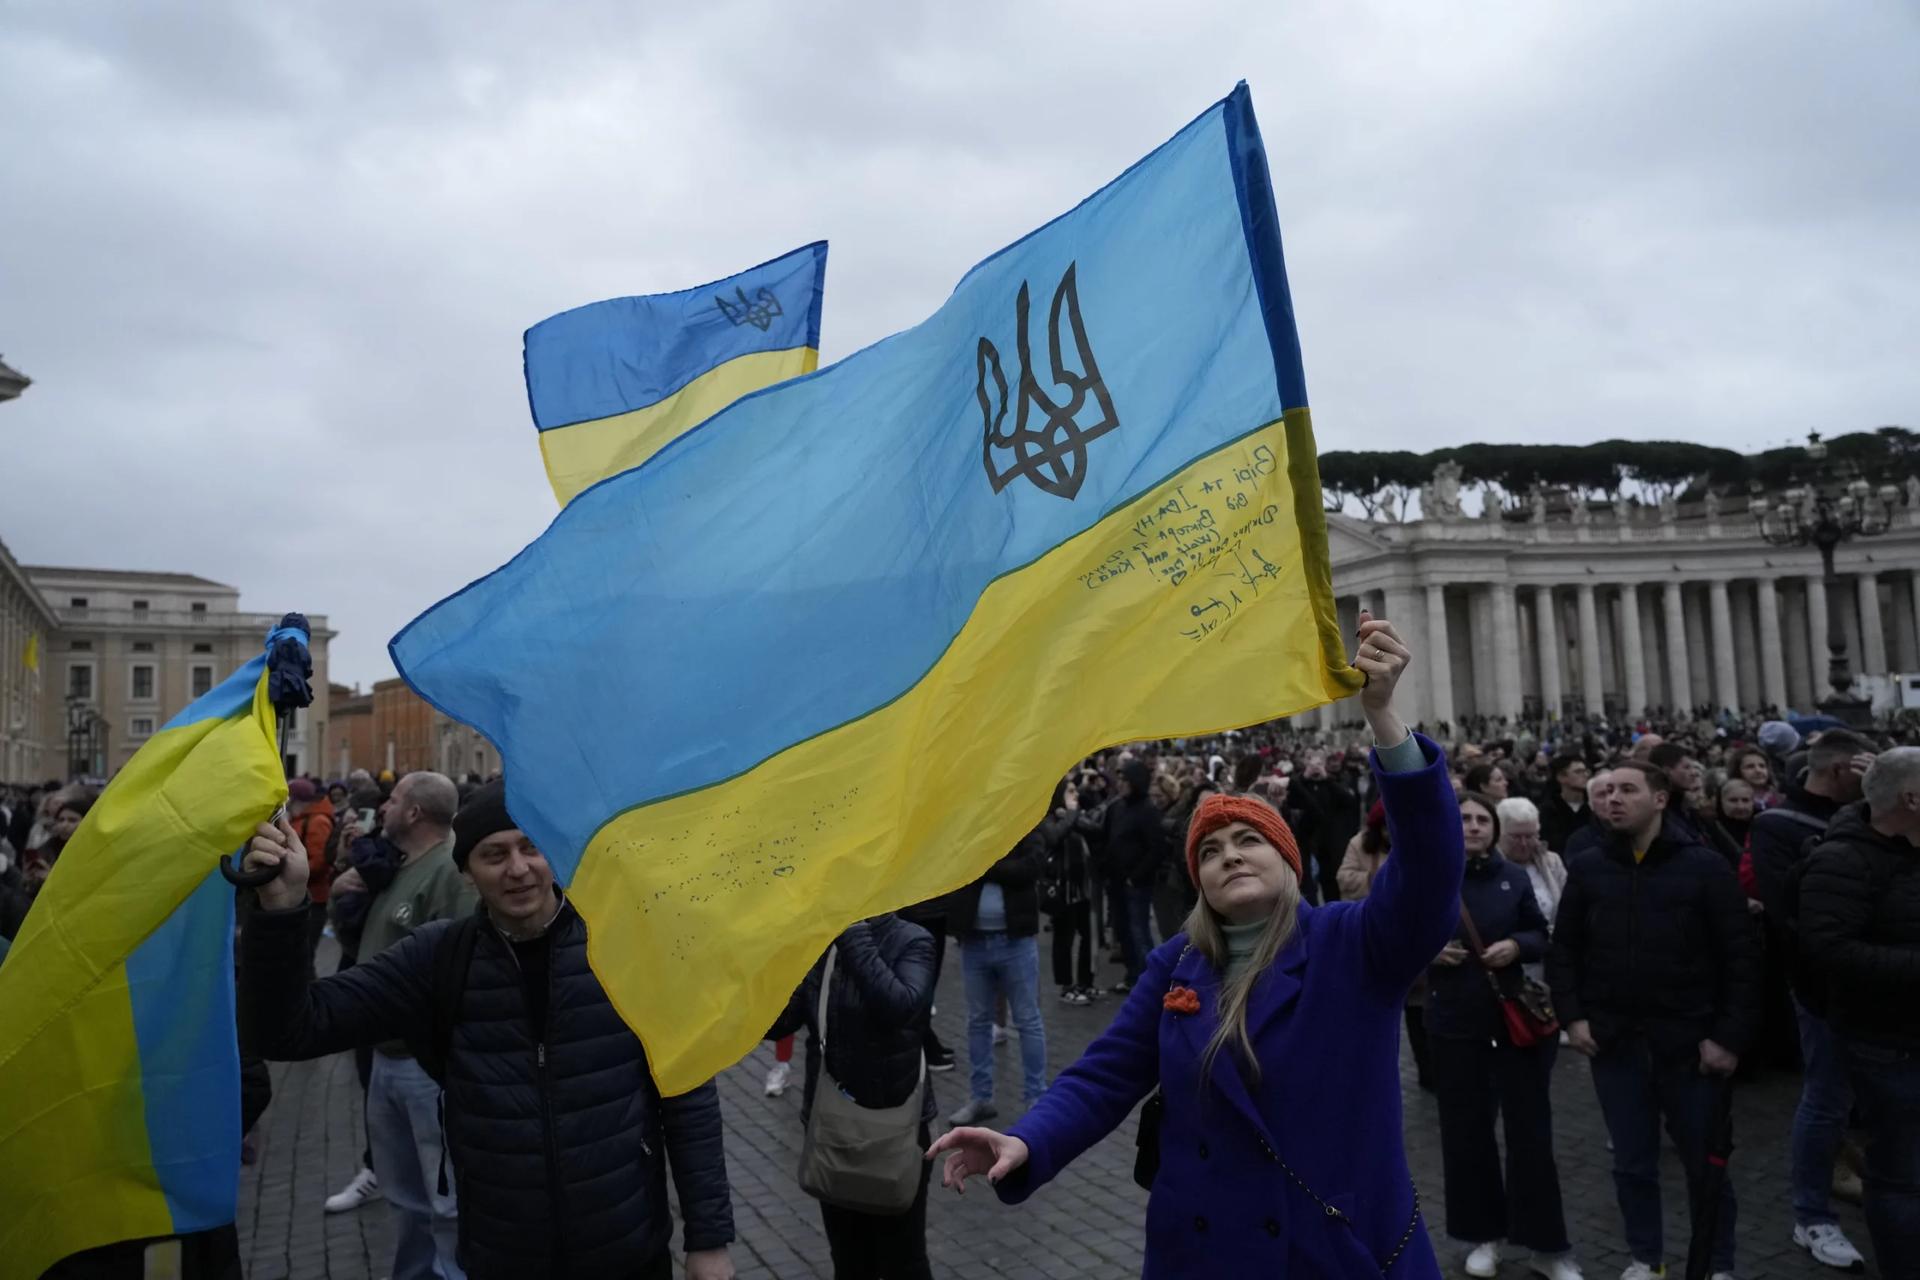 Pope faces civil, ecclesial backlash for Ukraine ‘white flag’ remarks